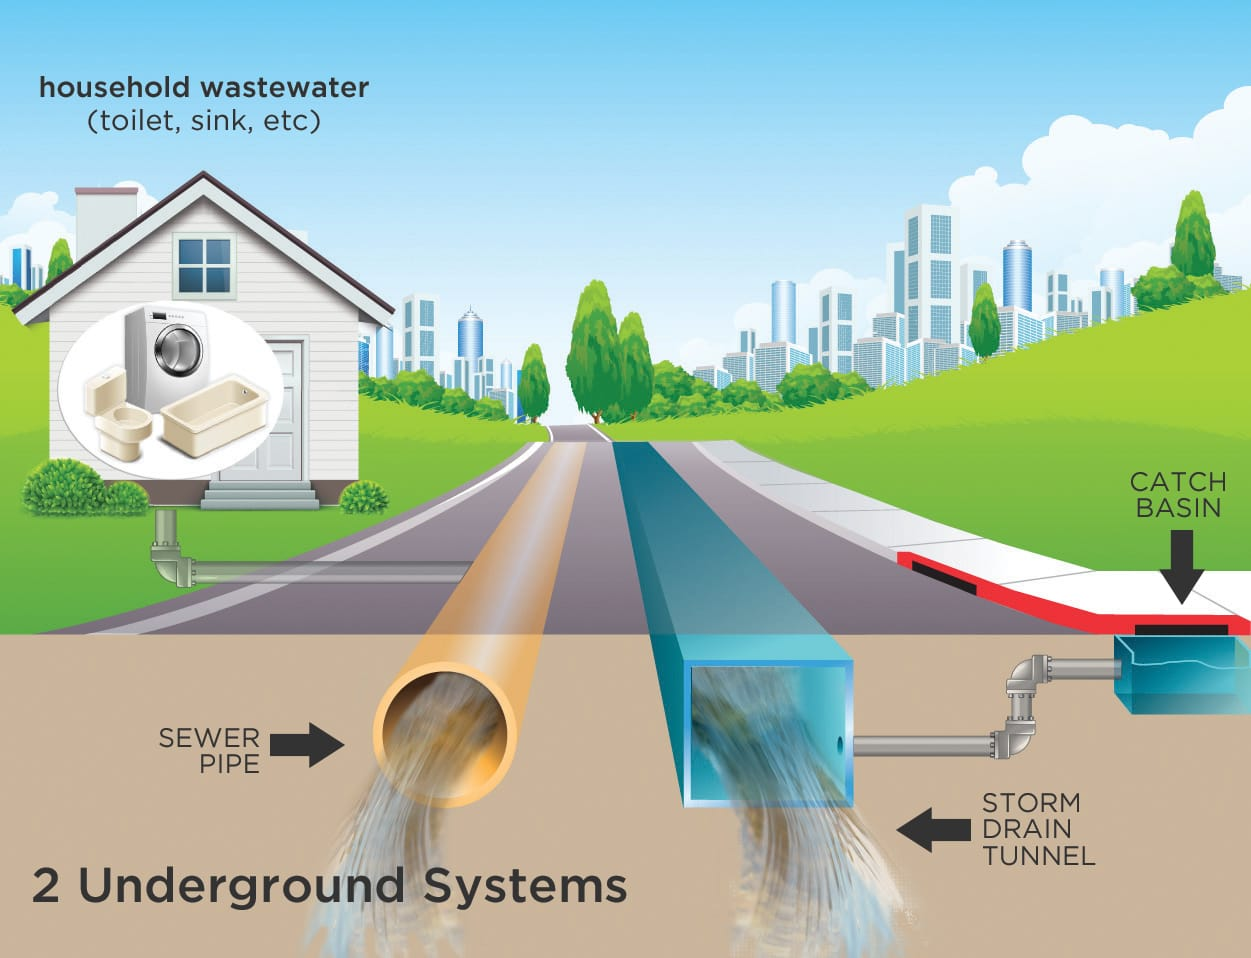 Sistema de alcantarillado - una tubería de alcantarillado que recoge las aguas residuales domésticas